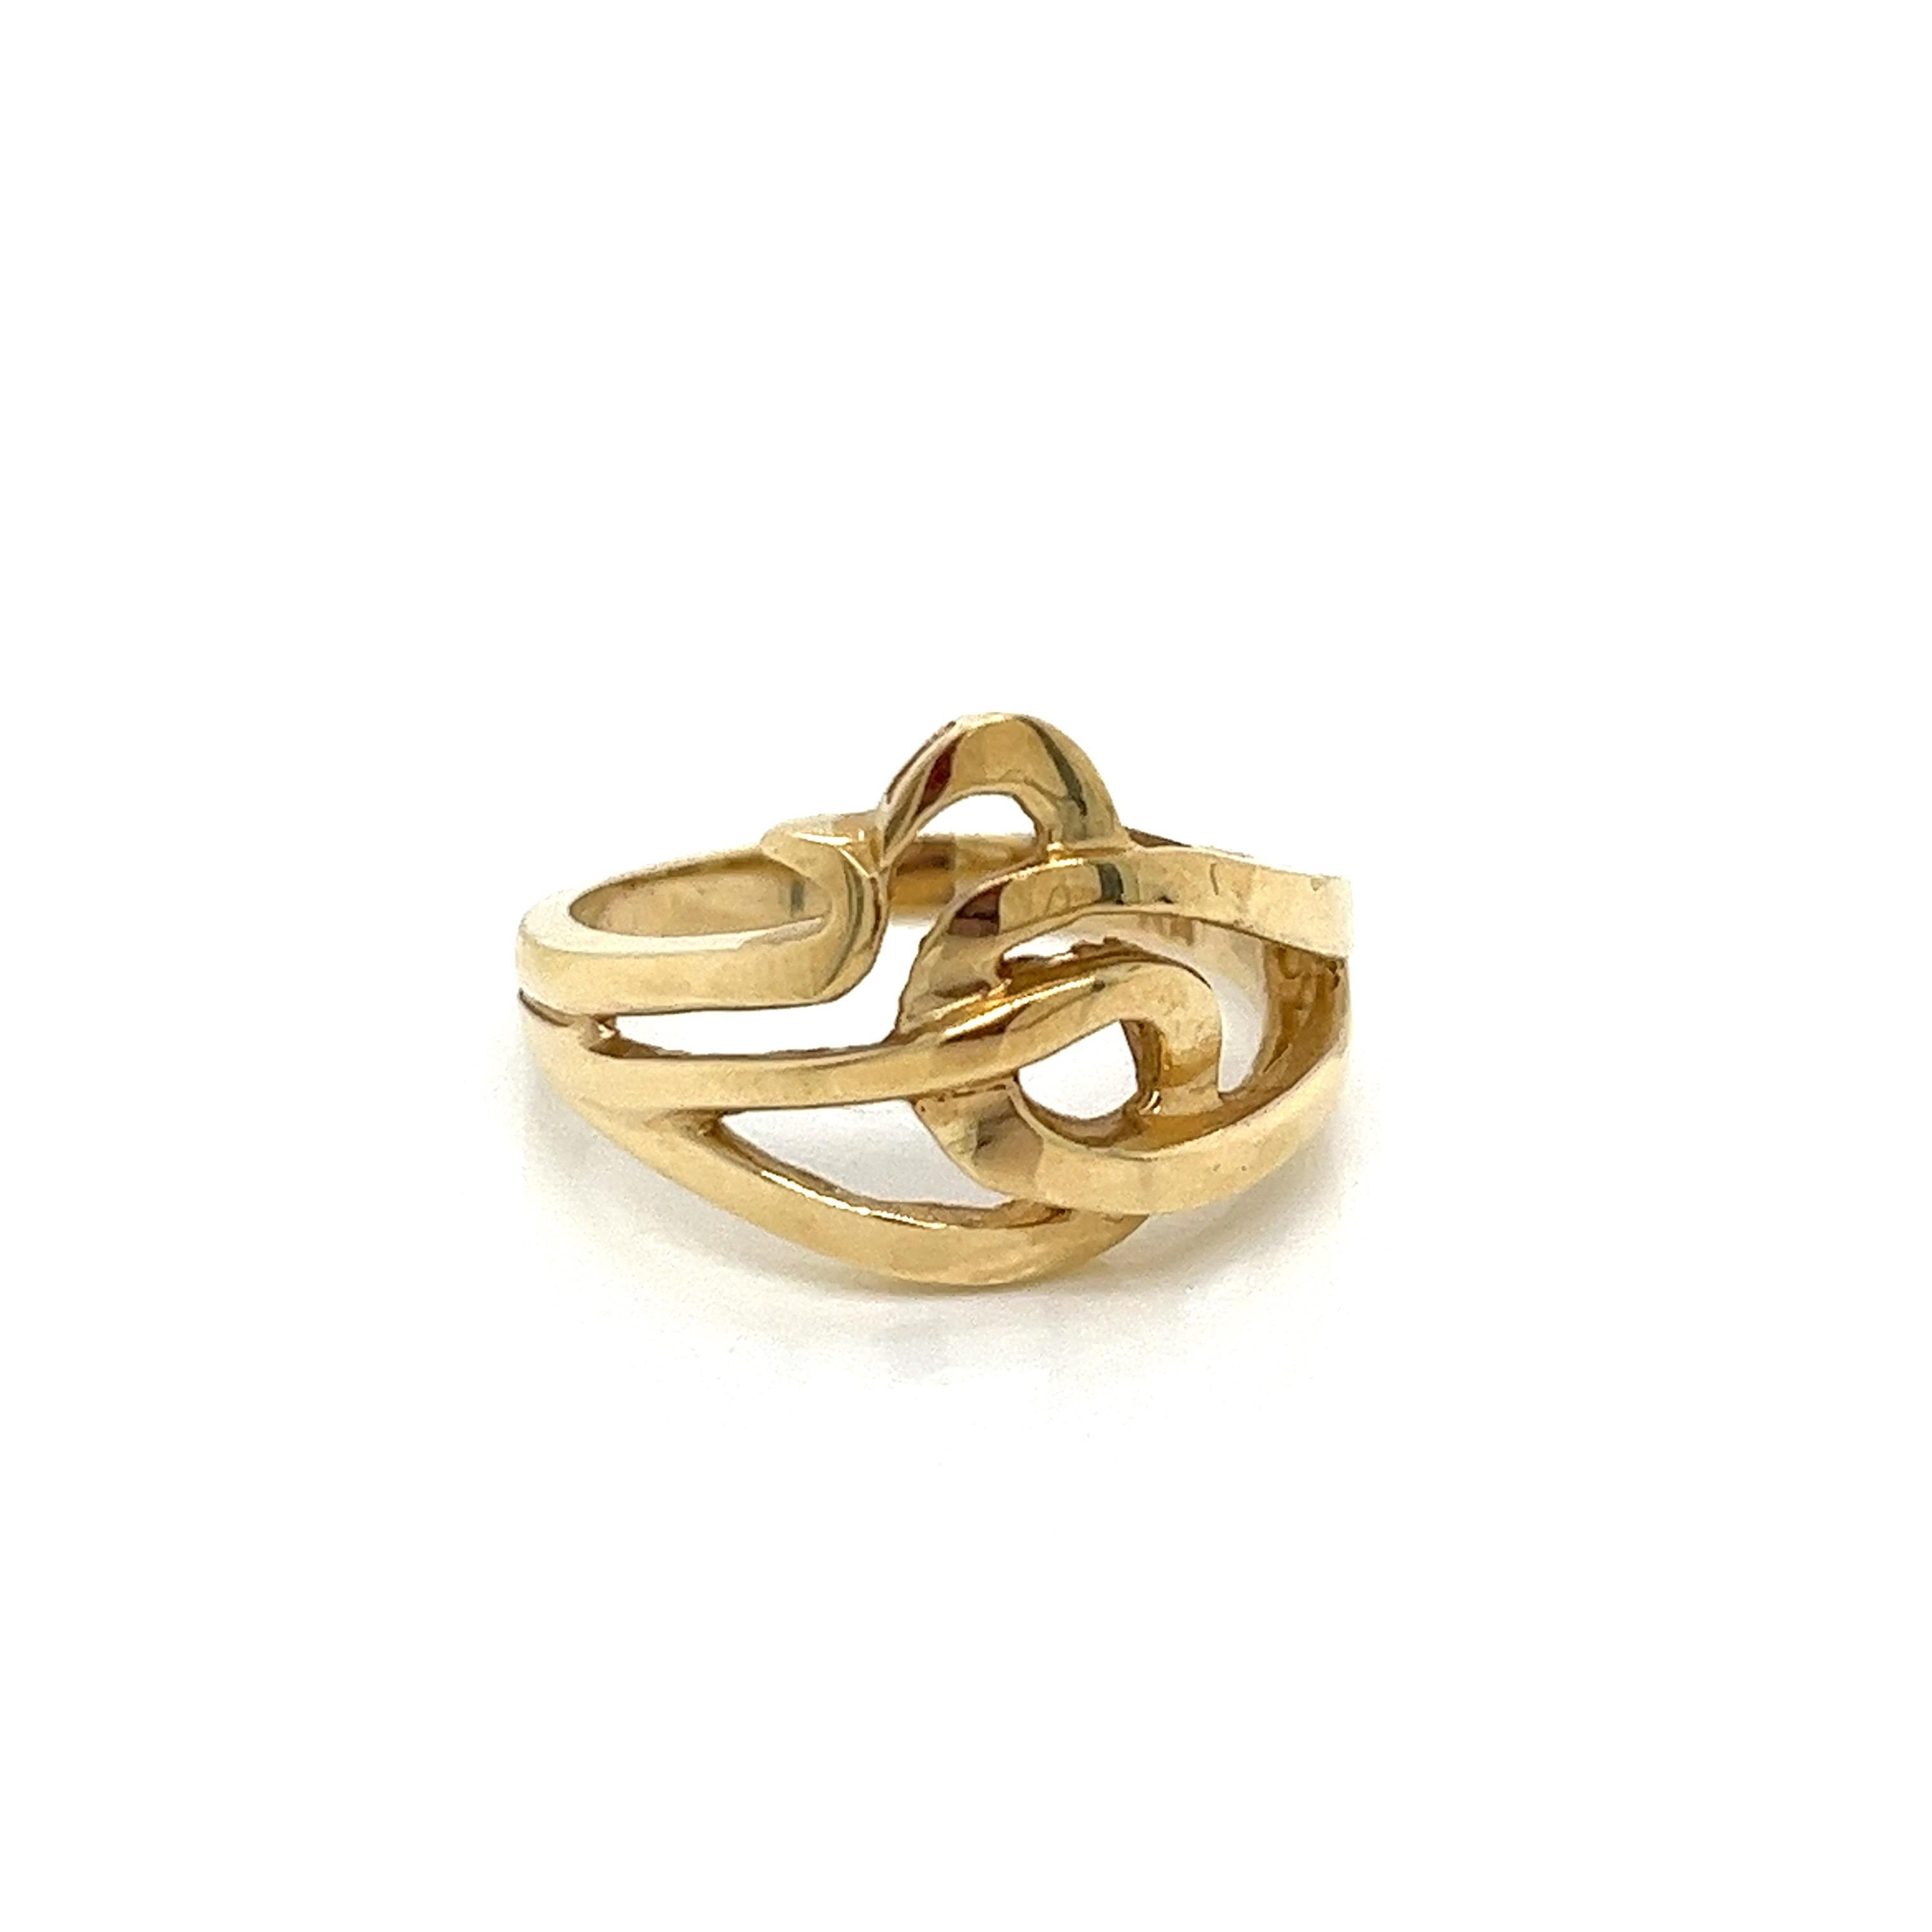 Vintage 1980's 14k Yellow Gold Statement Ring. La largeur de l'anneau sur le dessus est de 13 mm et se rétrécit à 5 mm sur le côté et à 2,3 mm sur le dessous. Le tour de doigt est de 6,25 et il peut être dimensionné sur demande. La bague pèse 4,03 g.